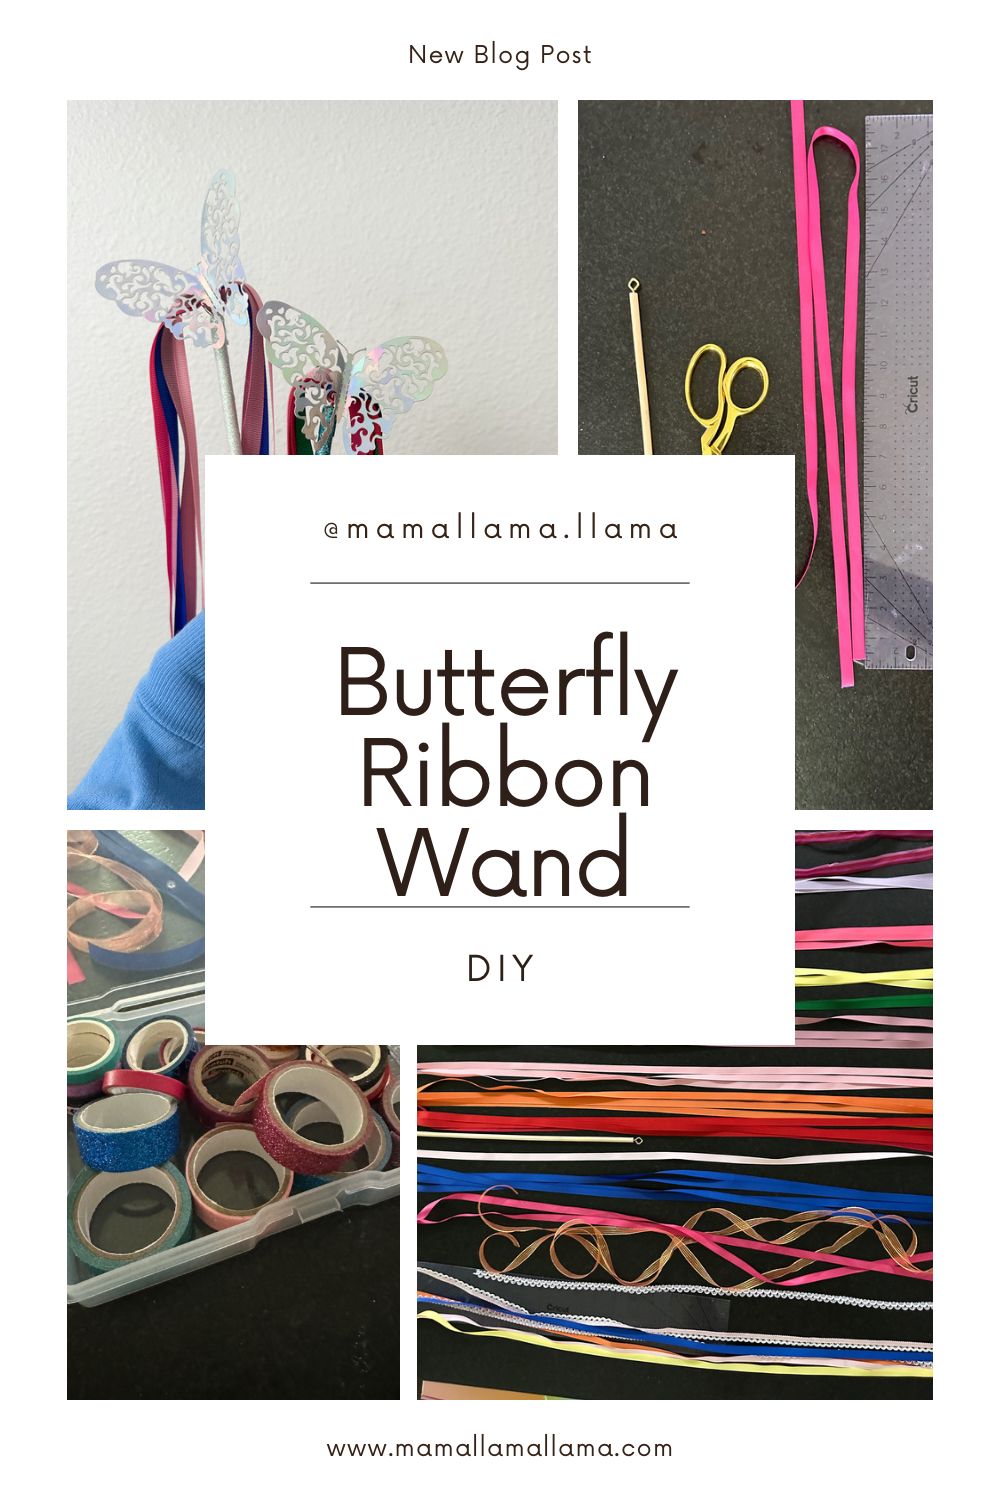 Butterfly ribbon wand